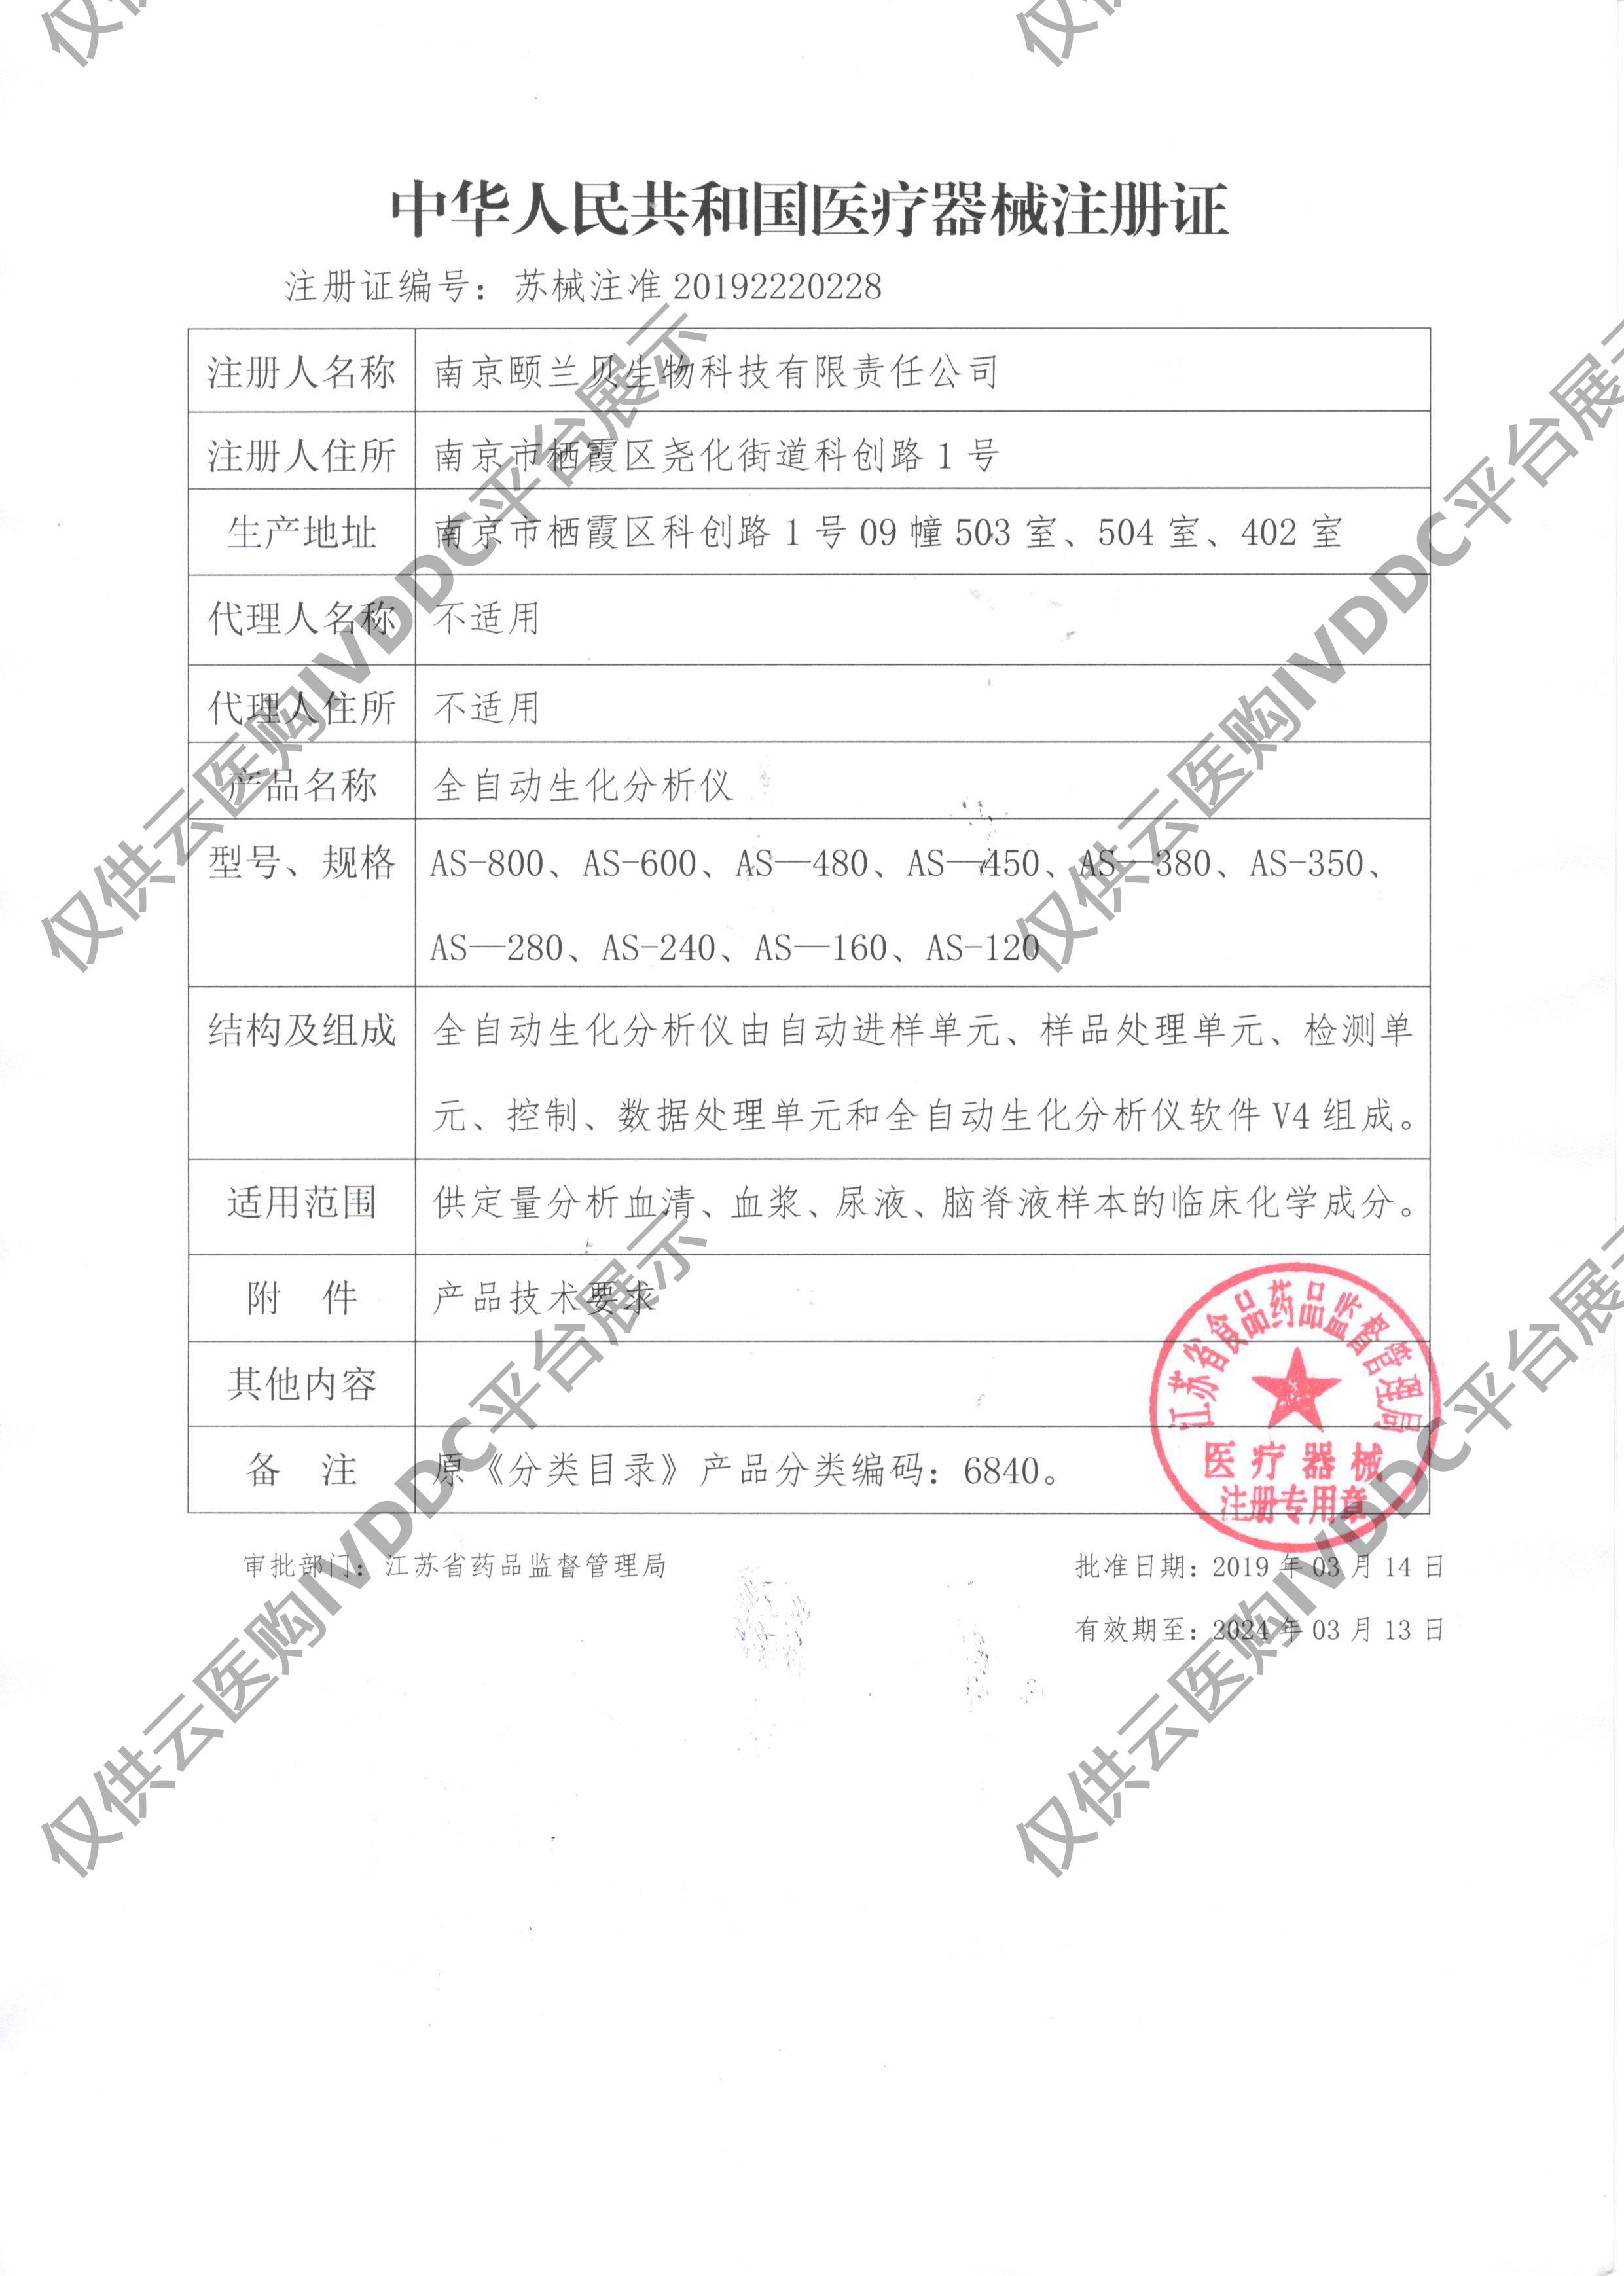 【颐兰贝】全自动生化分析仪 AS-480注册证